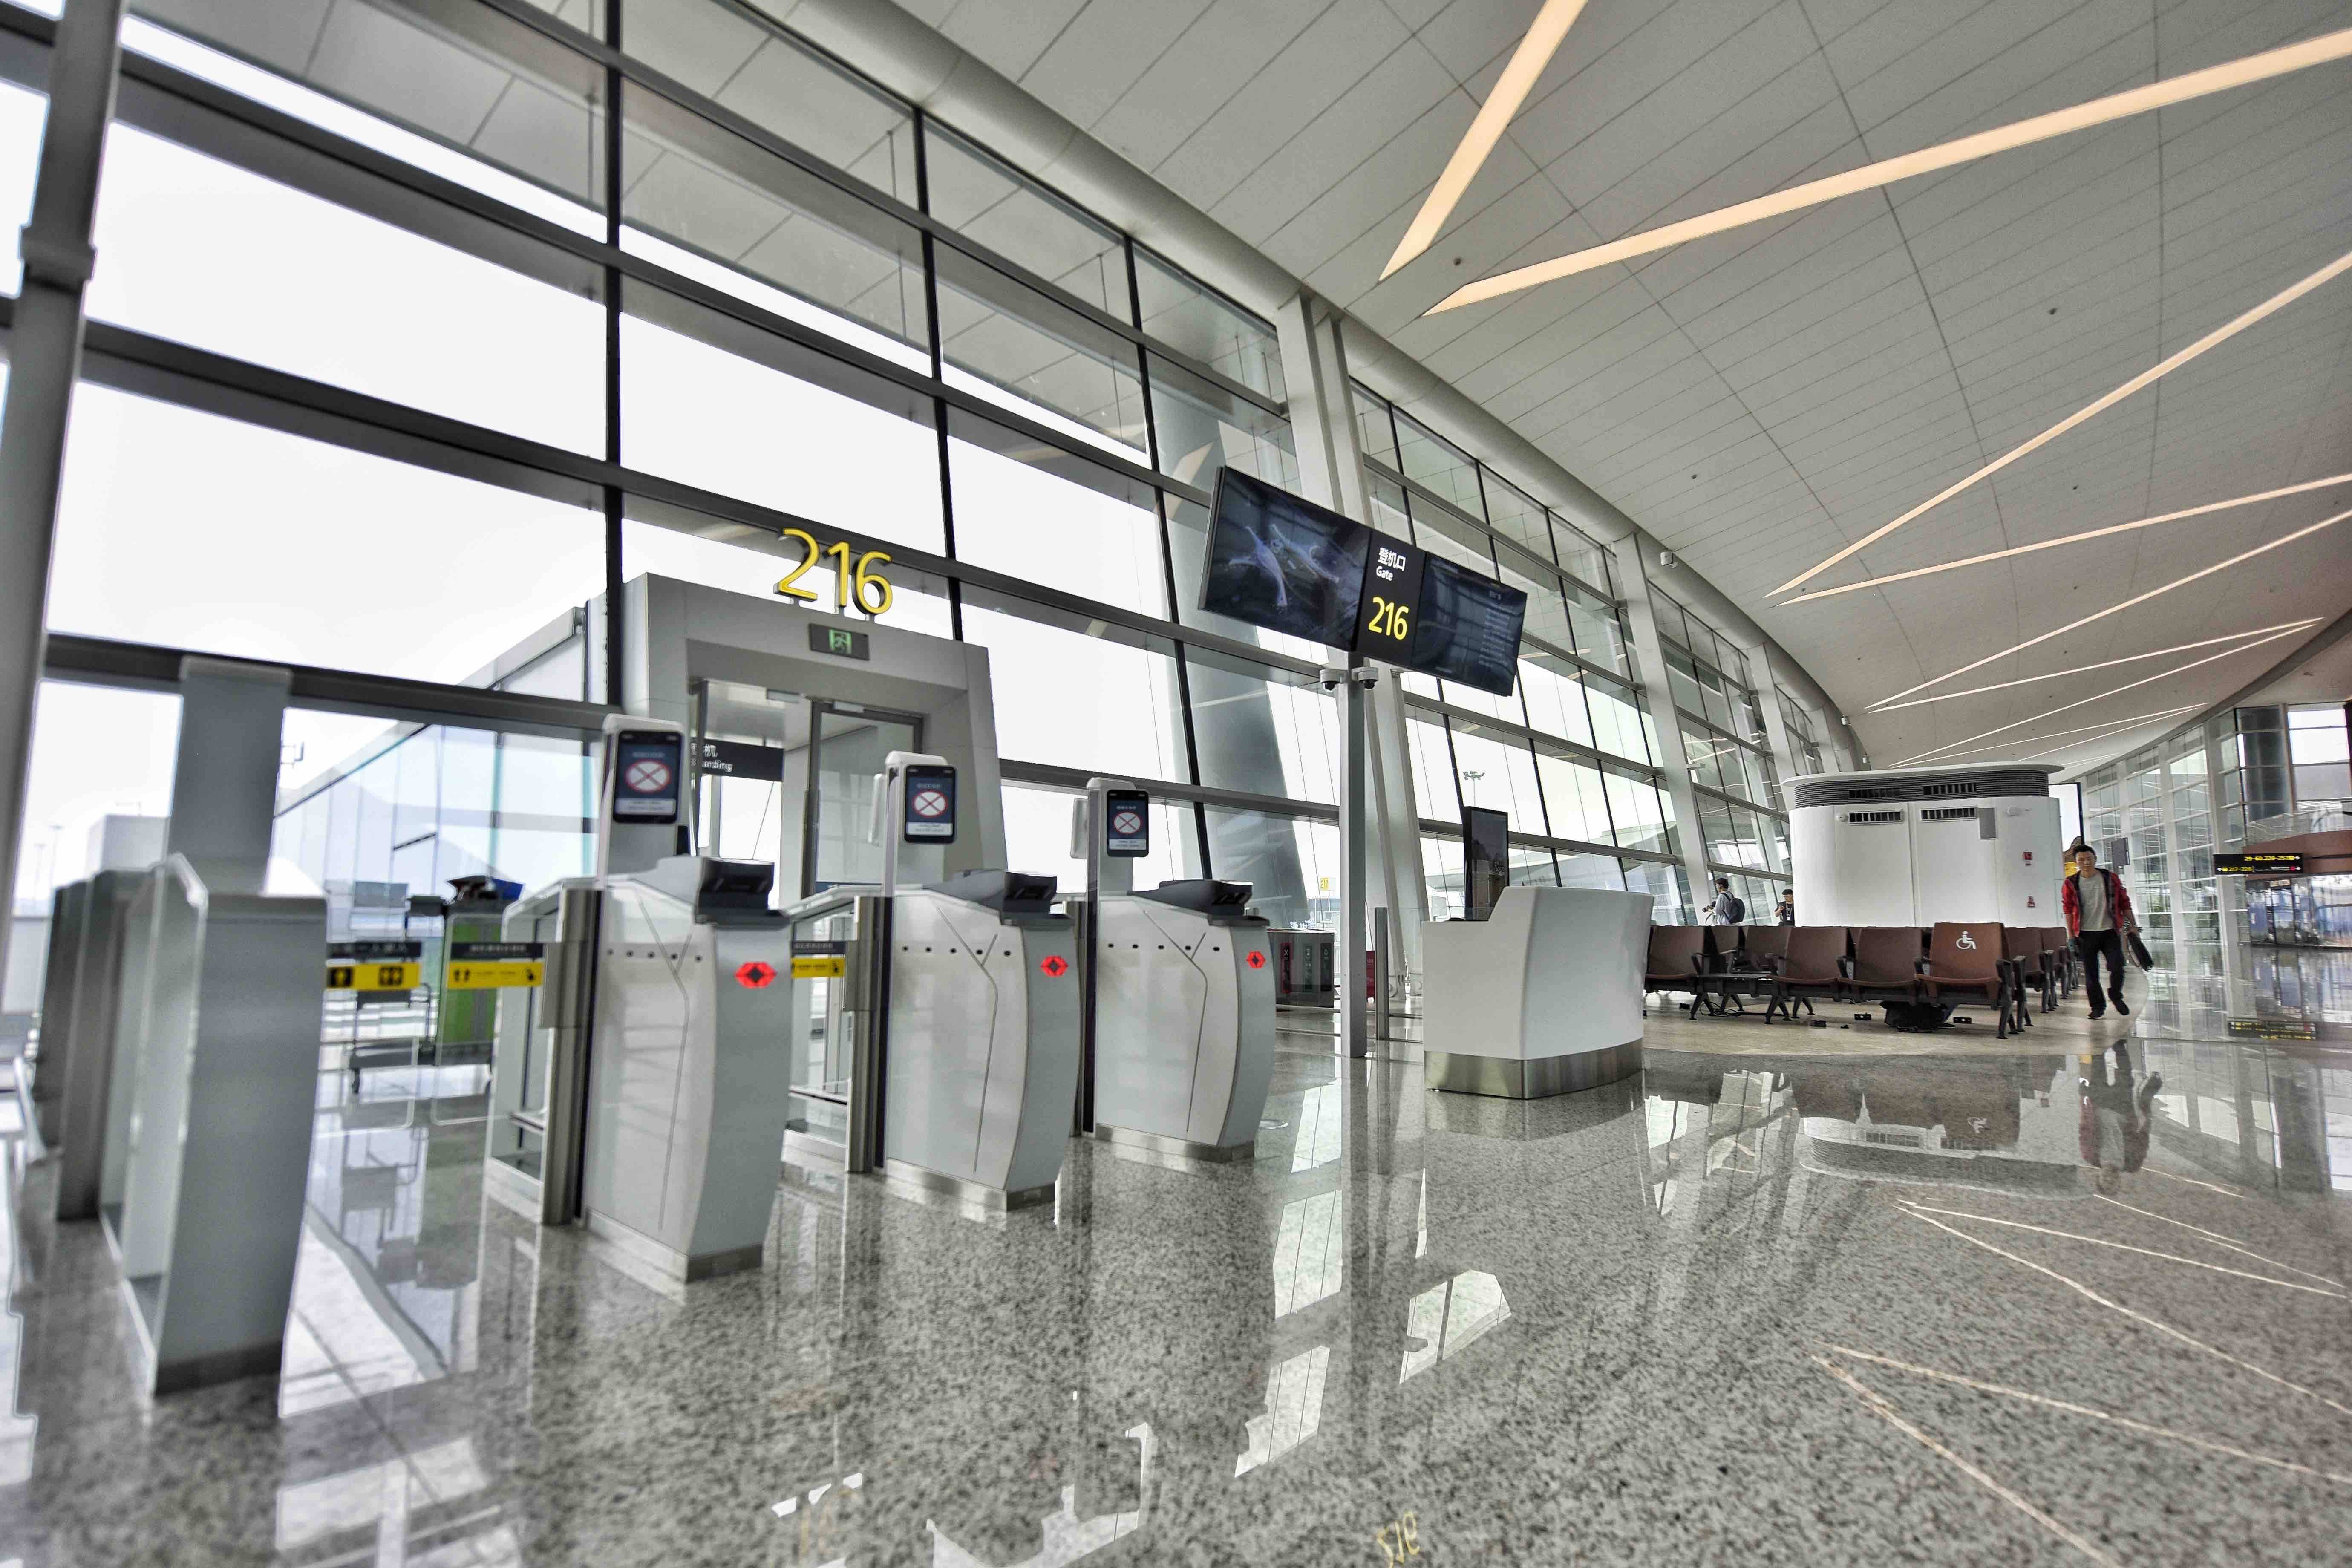 这是6月23日拍摄的成都天府国际机场t2航站楼内的登机口.